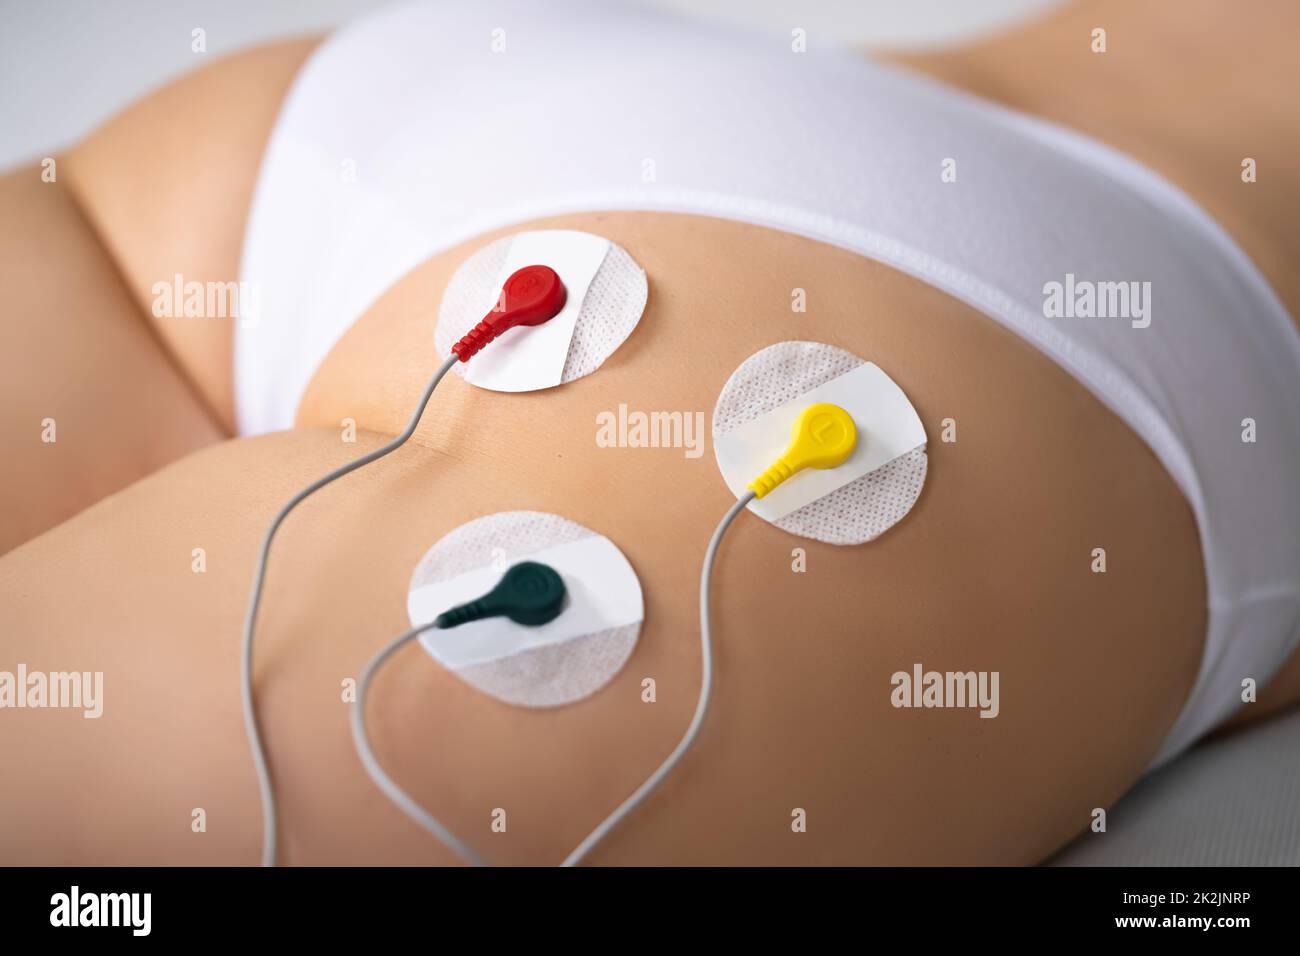 157 fotos e imágenes de Electrical Muscle Stimulation - Getty Images